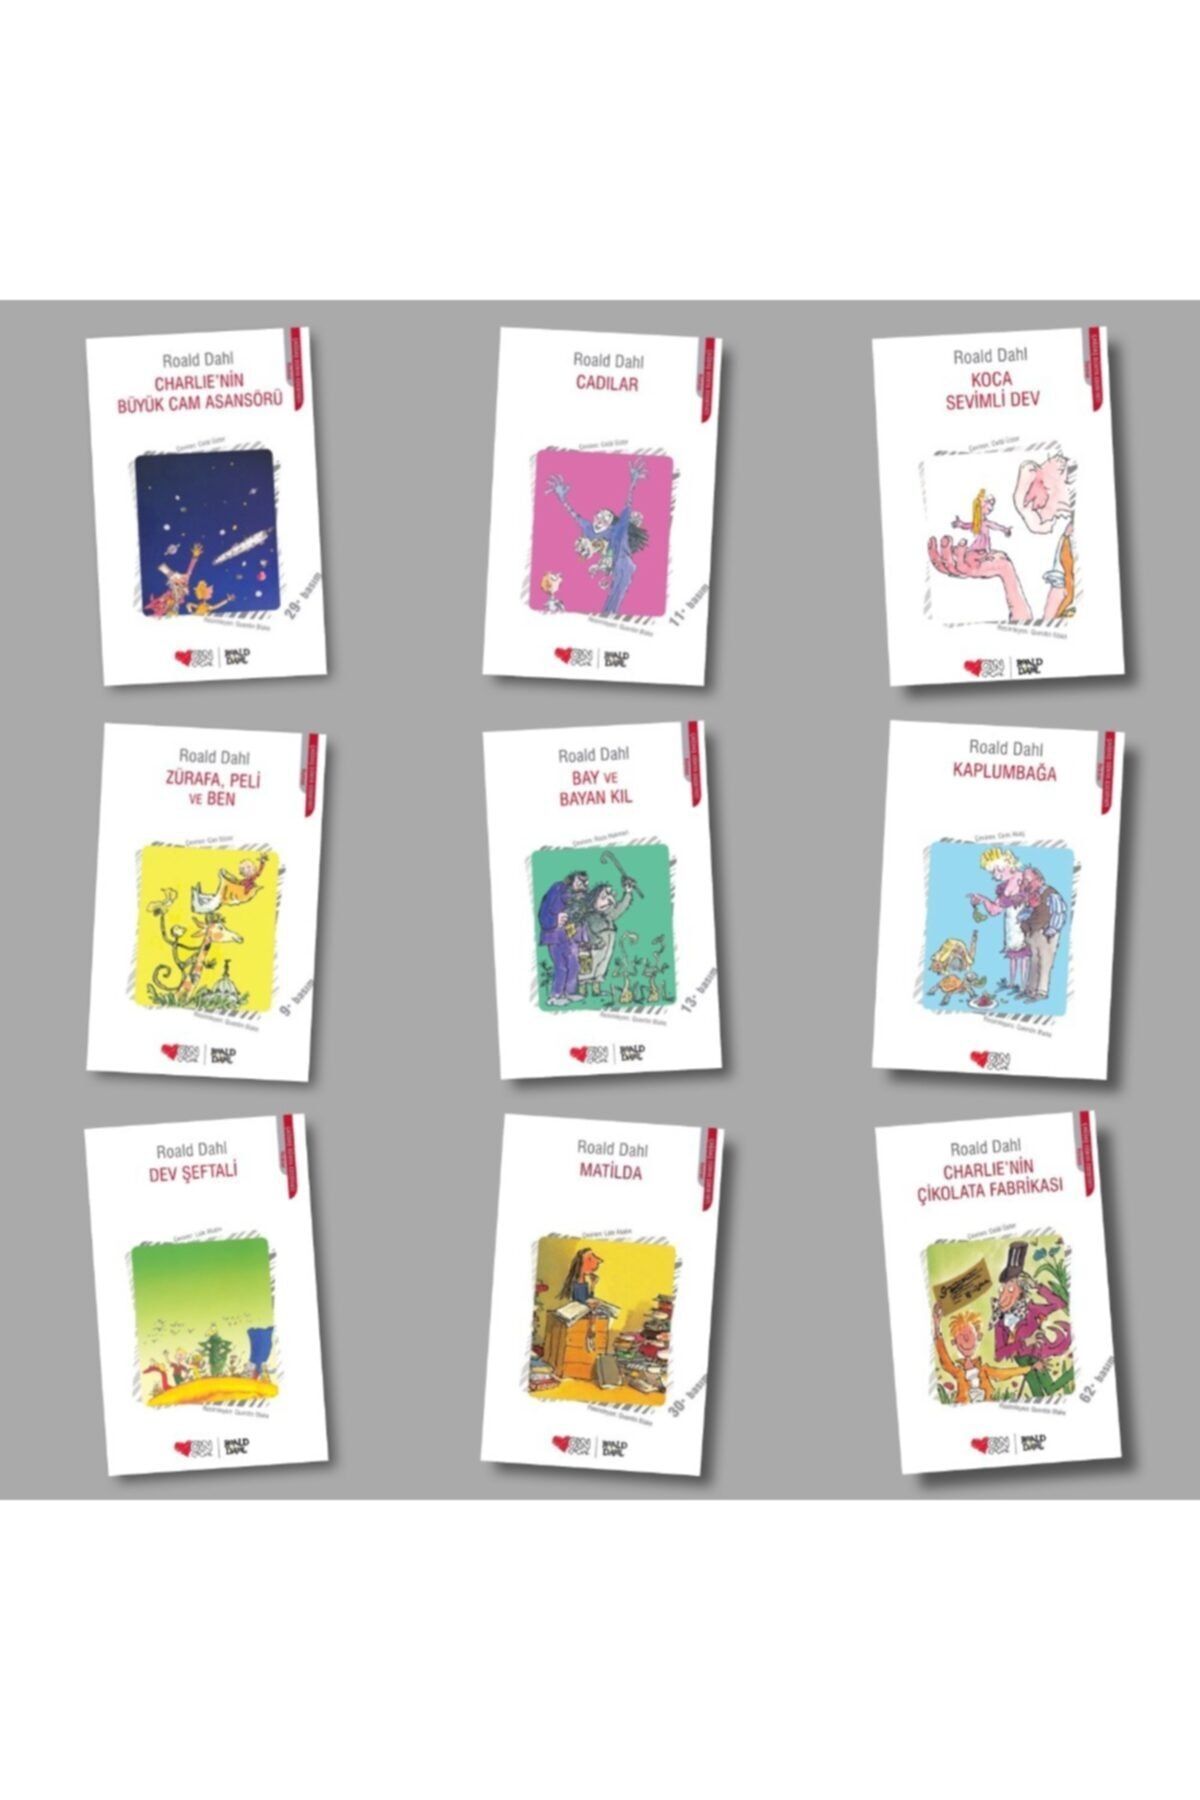 Can Çocuk Yayınları Roald Dahl 9 Kitap + Yaşayan Kalem Hediye (zürafa Peli - Matilda - Charlie'nin Çikolata Fabrikası )